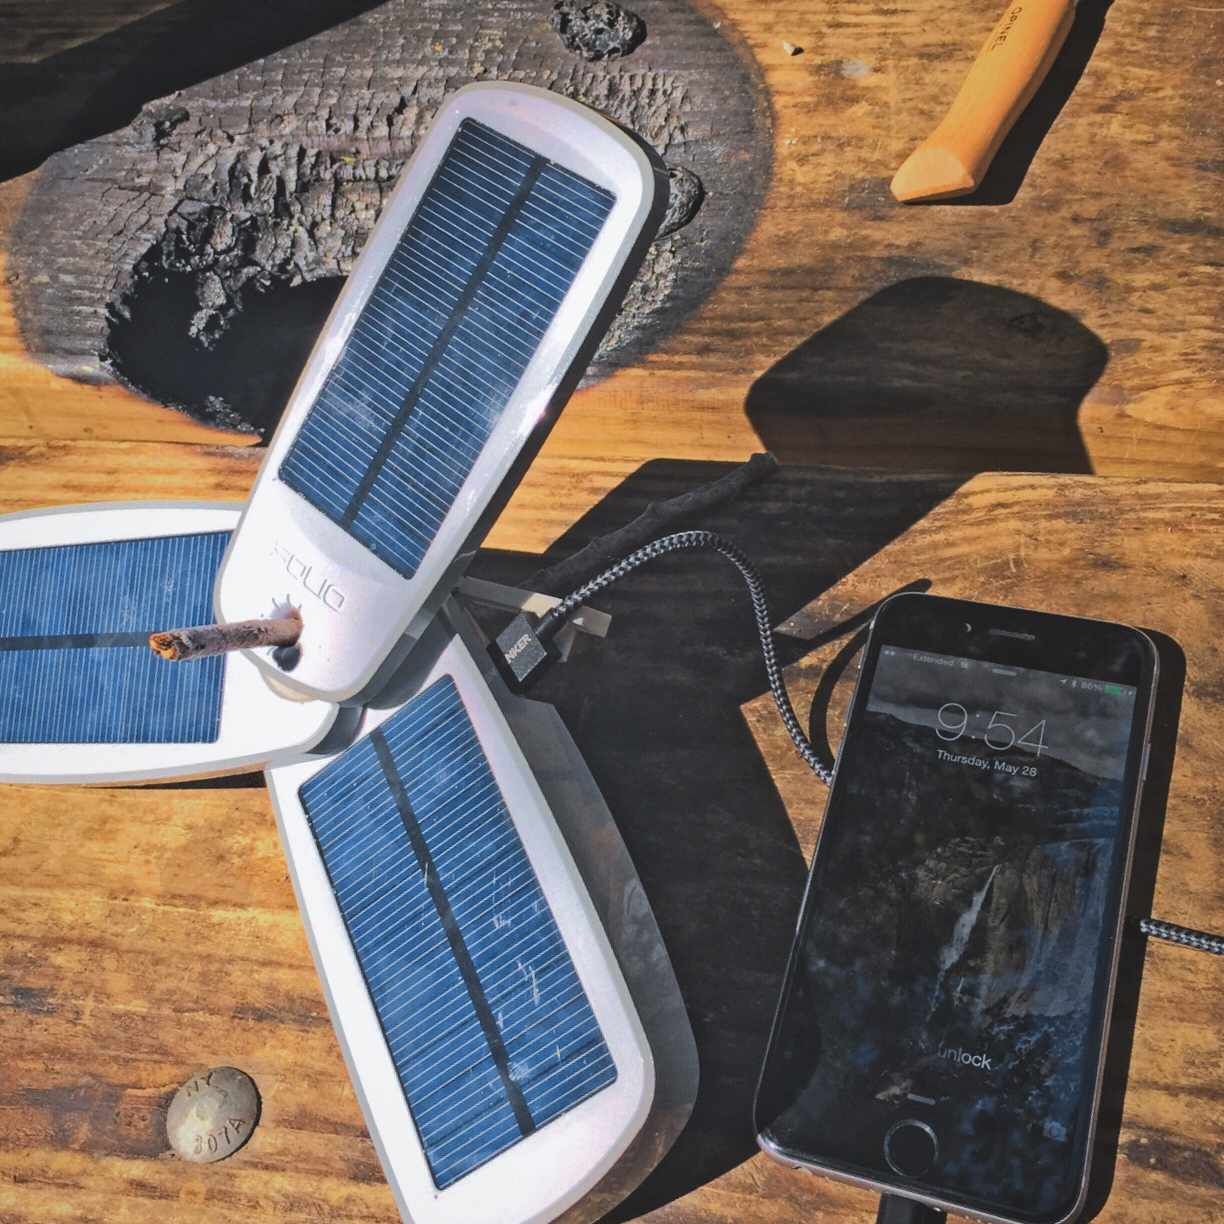 IPhone заряжается от солнечной энергии.